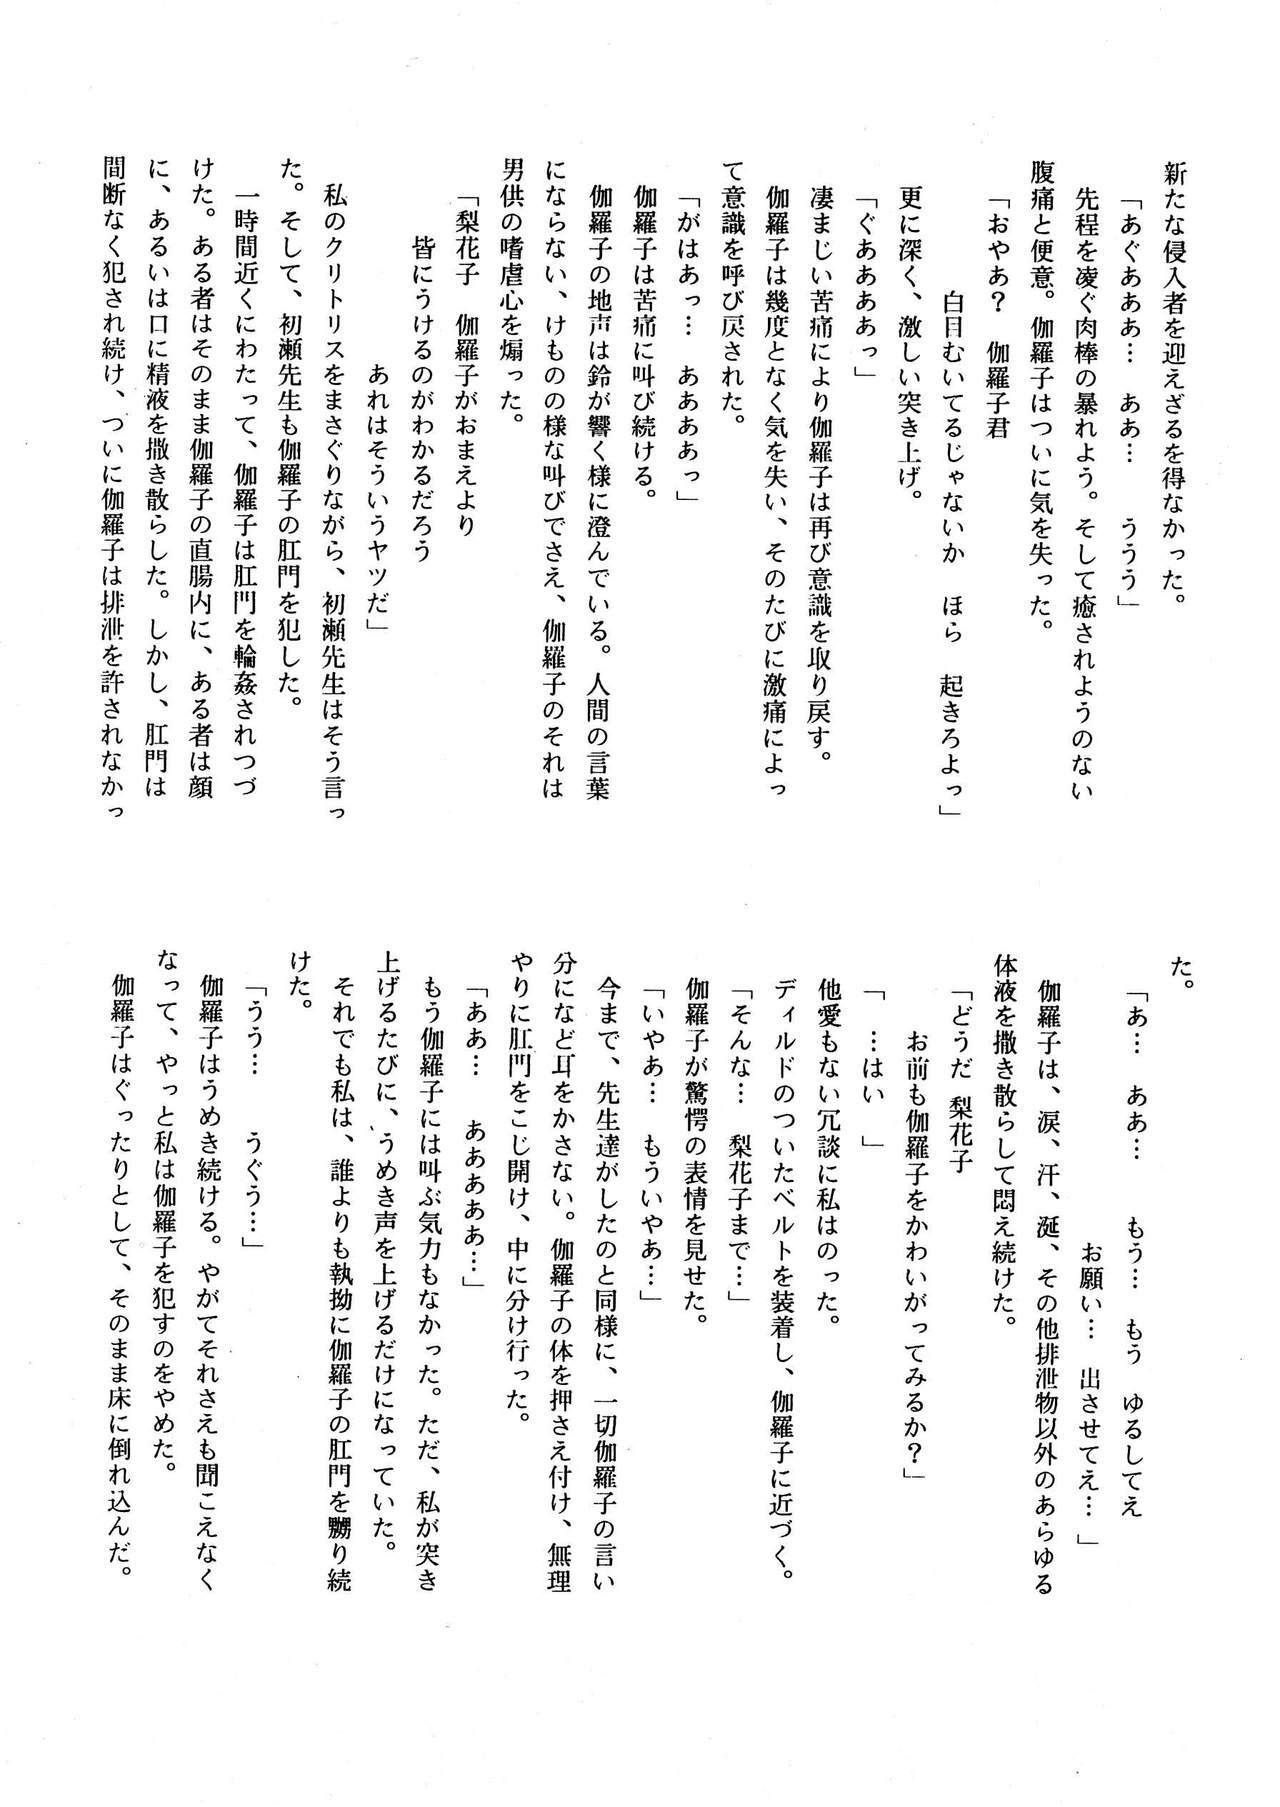 [菊花酒楼 (菊水)] Celestial page 36 full